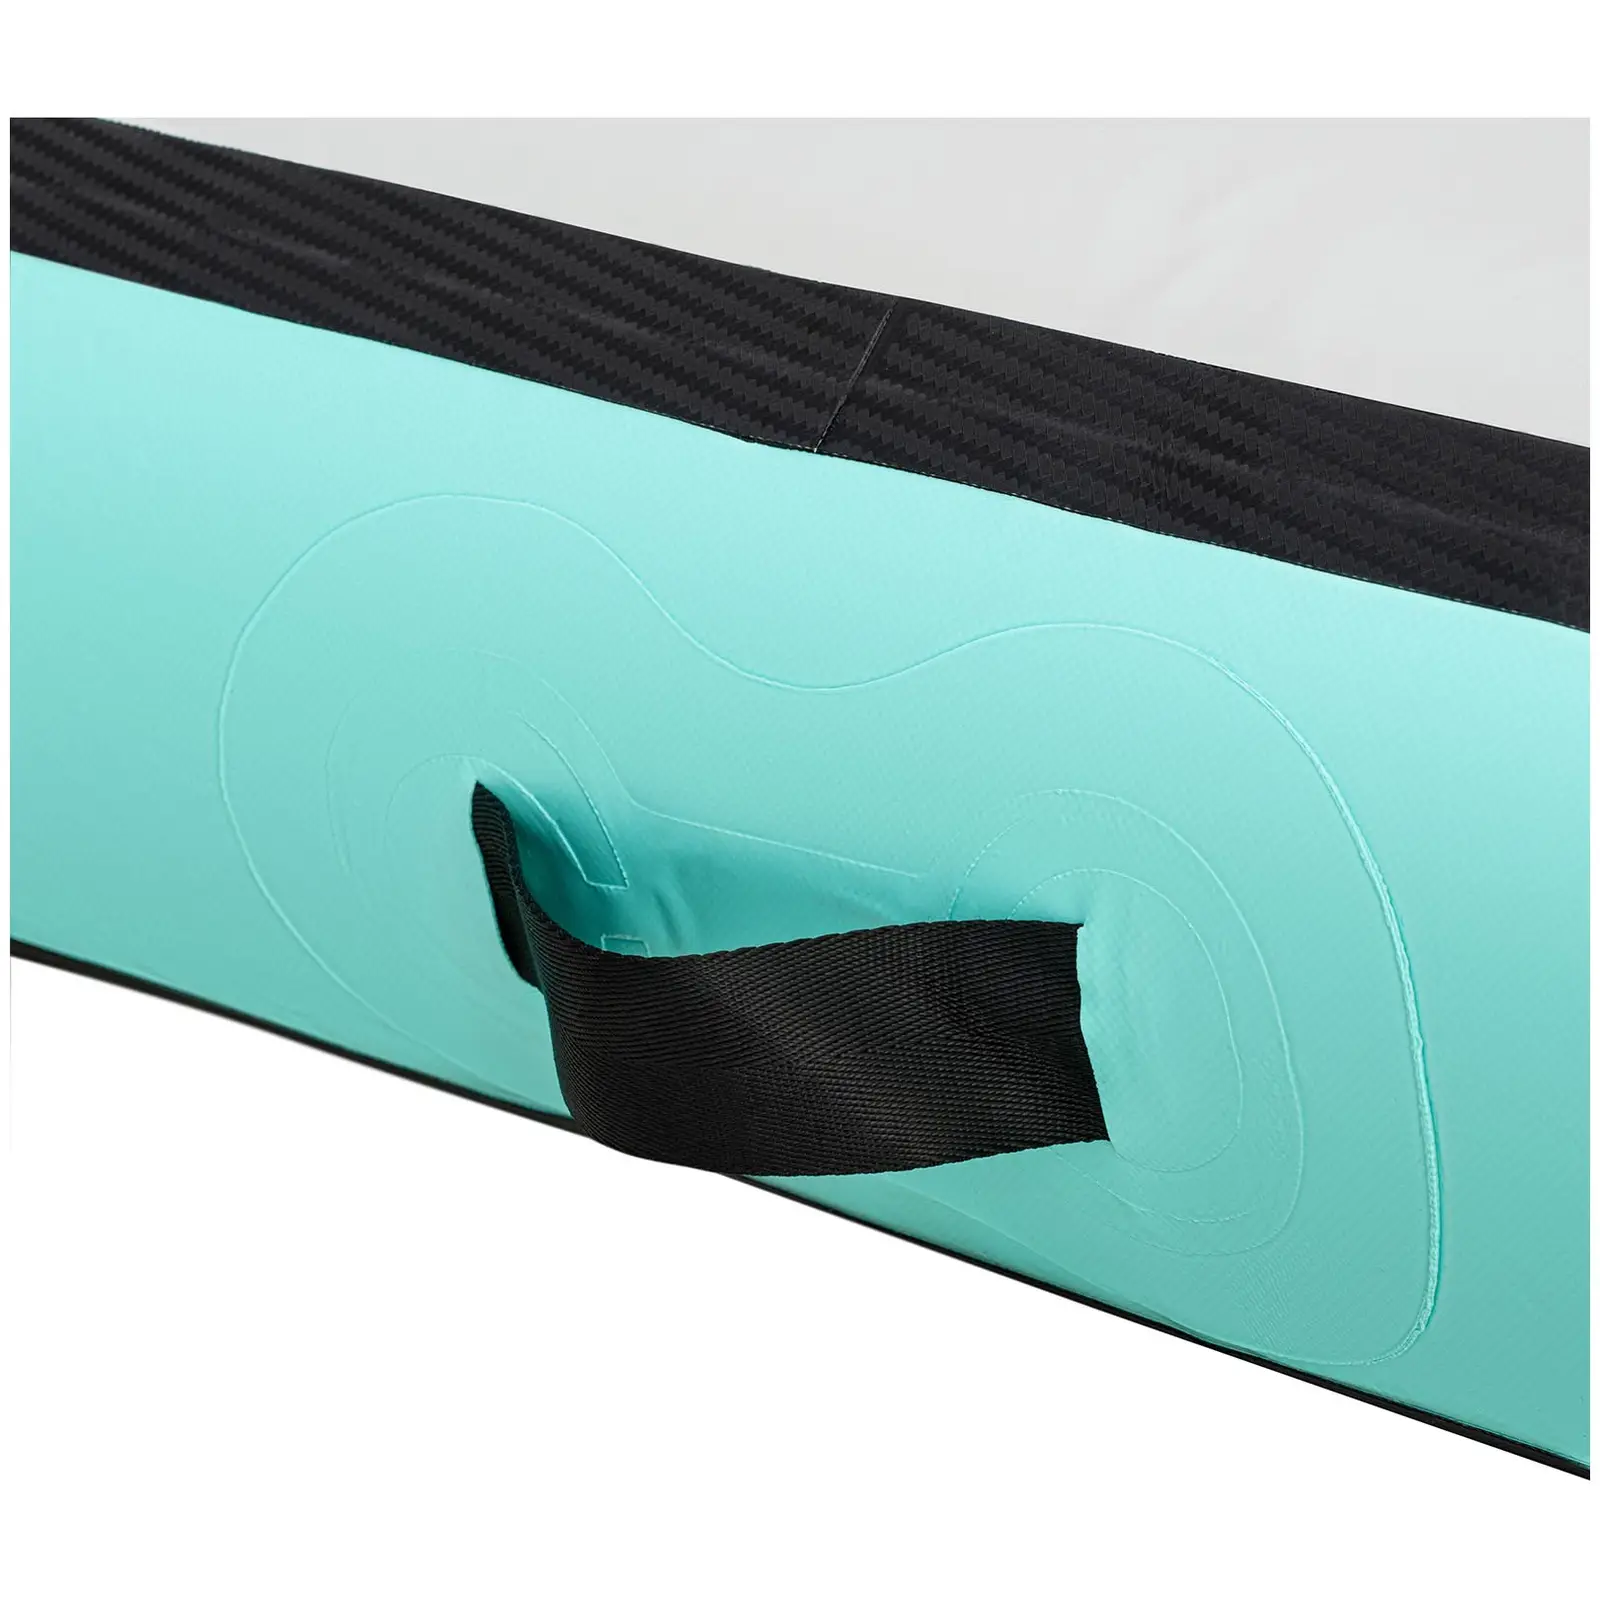 Uppblåsbar gymnastikmatta - 400 x 100 x 20 cm - 170 kg - Grå/grön